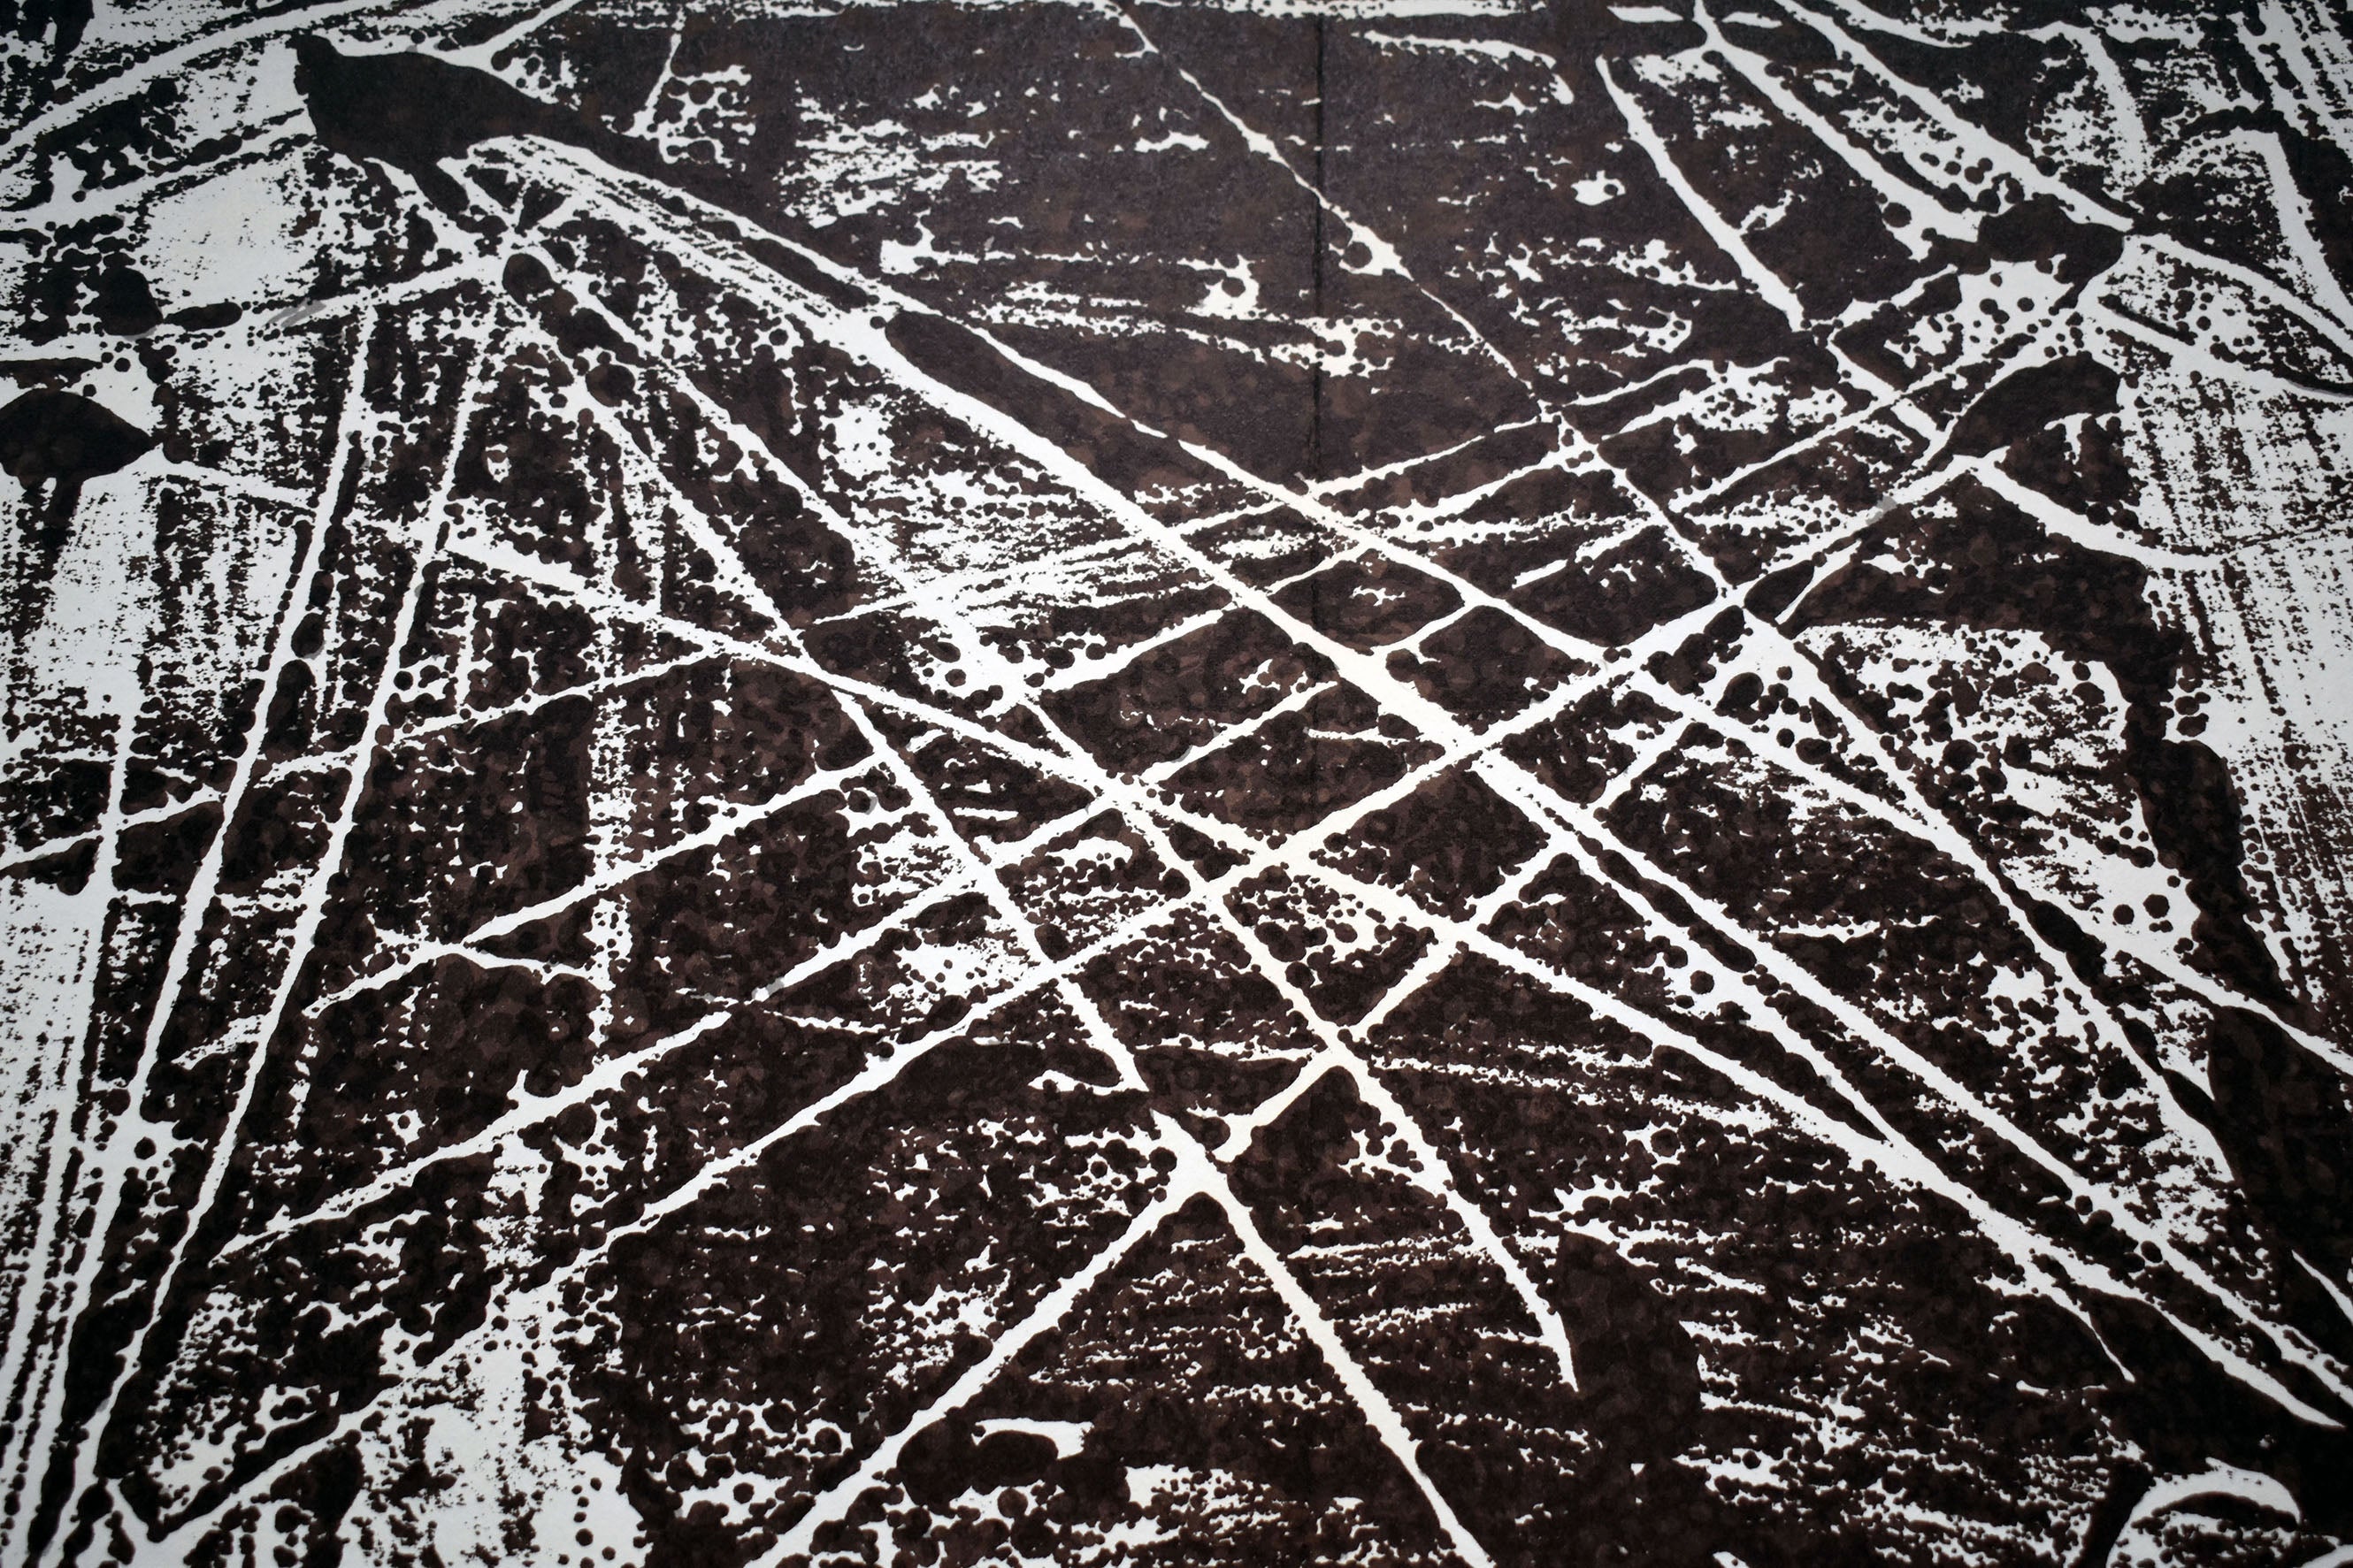 Antoni TÀPIES. Monotypes, 1974. Litografía DLM